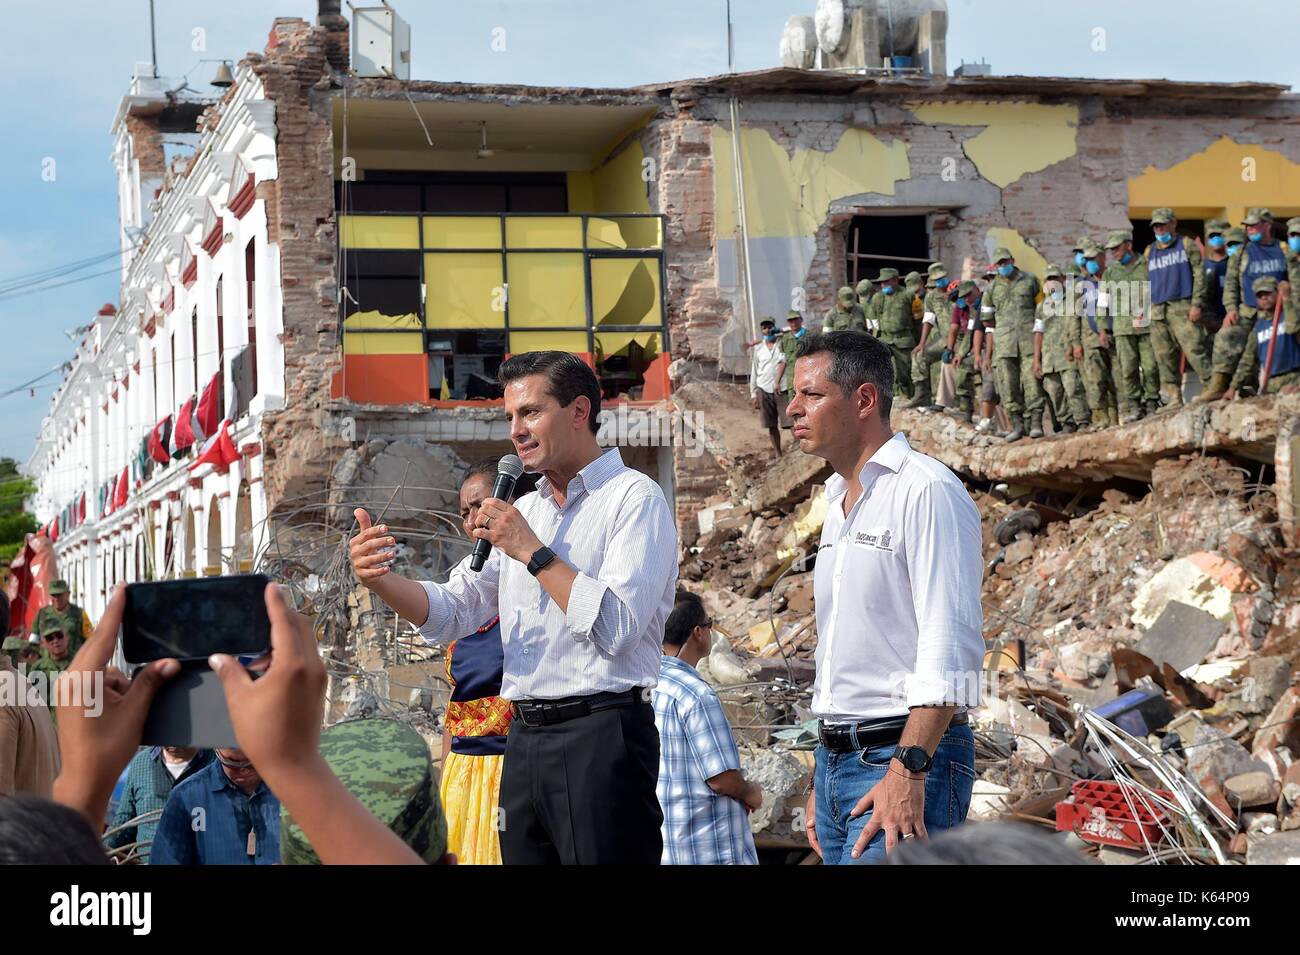 Le président mexicain Enrique pena nieto parle aux résidents en face d'une école détruite comme il vues dommages sismiques au cours d'une visite à la ville côtière la plus proche de l'épicentre, le 9 septembre 2017 à juchitán, Oaxaca, Mexique. l'énorme séisme a frappé d'une magnitude de 8,2 au large de la côte pacifique du sud du Chiapas, tuant au moins 60 personnes et les zones de mise à niveau dans certains états du sud. Banque D'Images